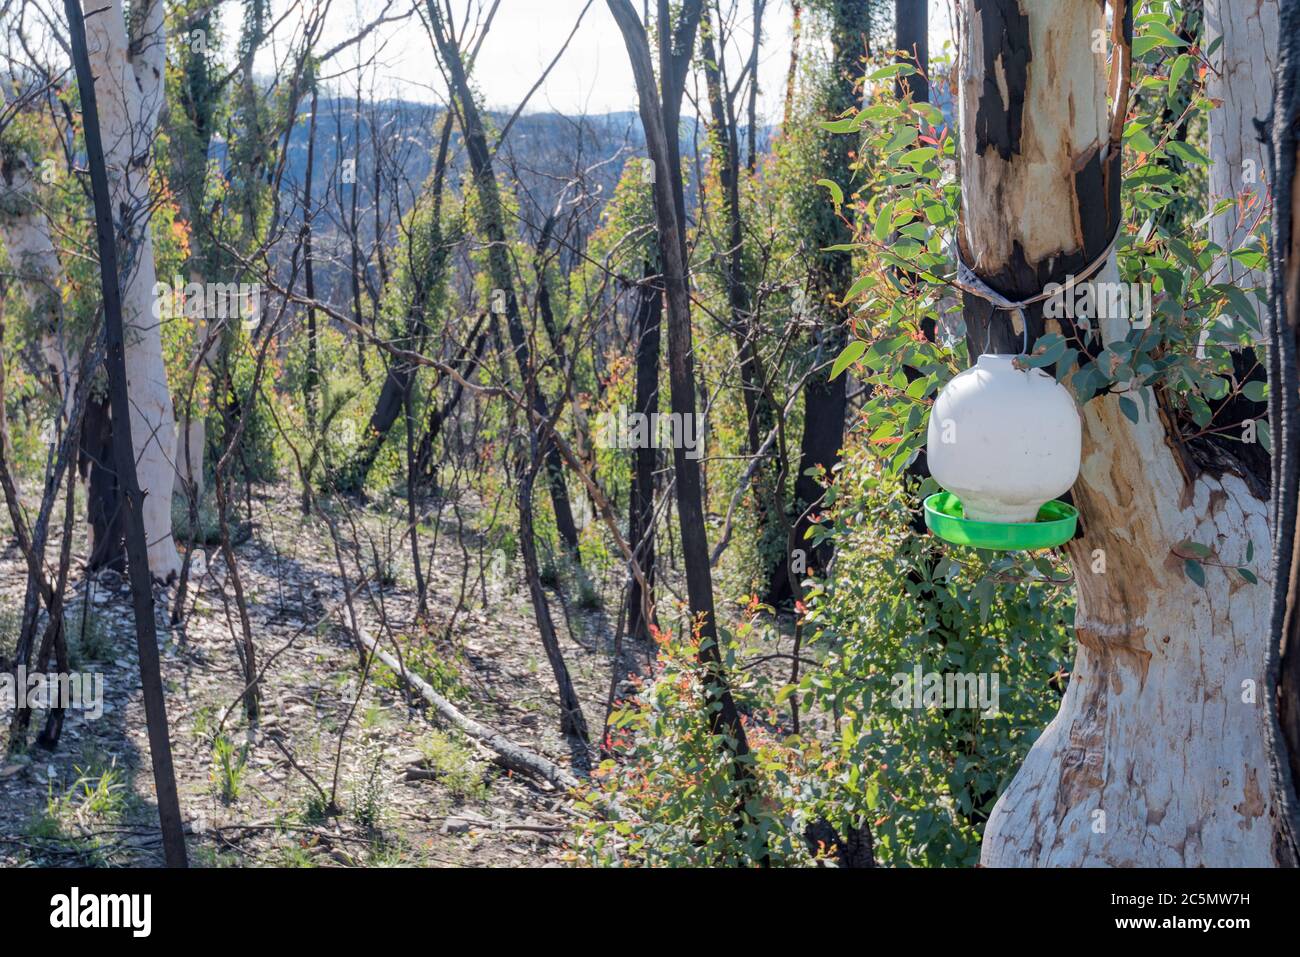 Juni 2020: Anzeichen für Nachwachsen und Erholung von den verheerenden Buschbränden auf der Bells Line of Road bei Bilpin Siehe meine Vergleichsbilder Jan 2020 Stockfoto